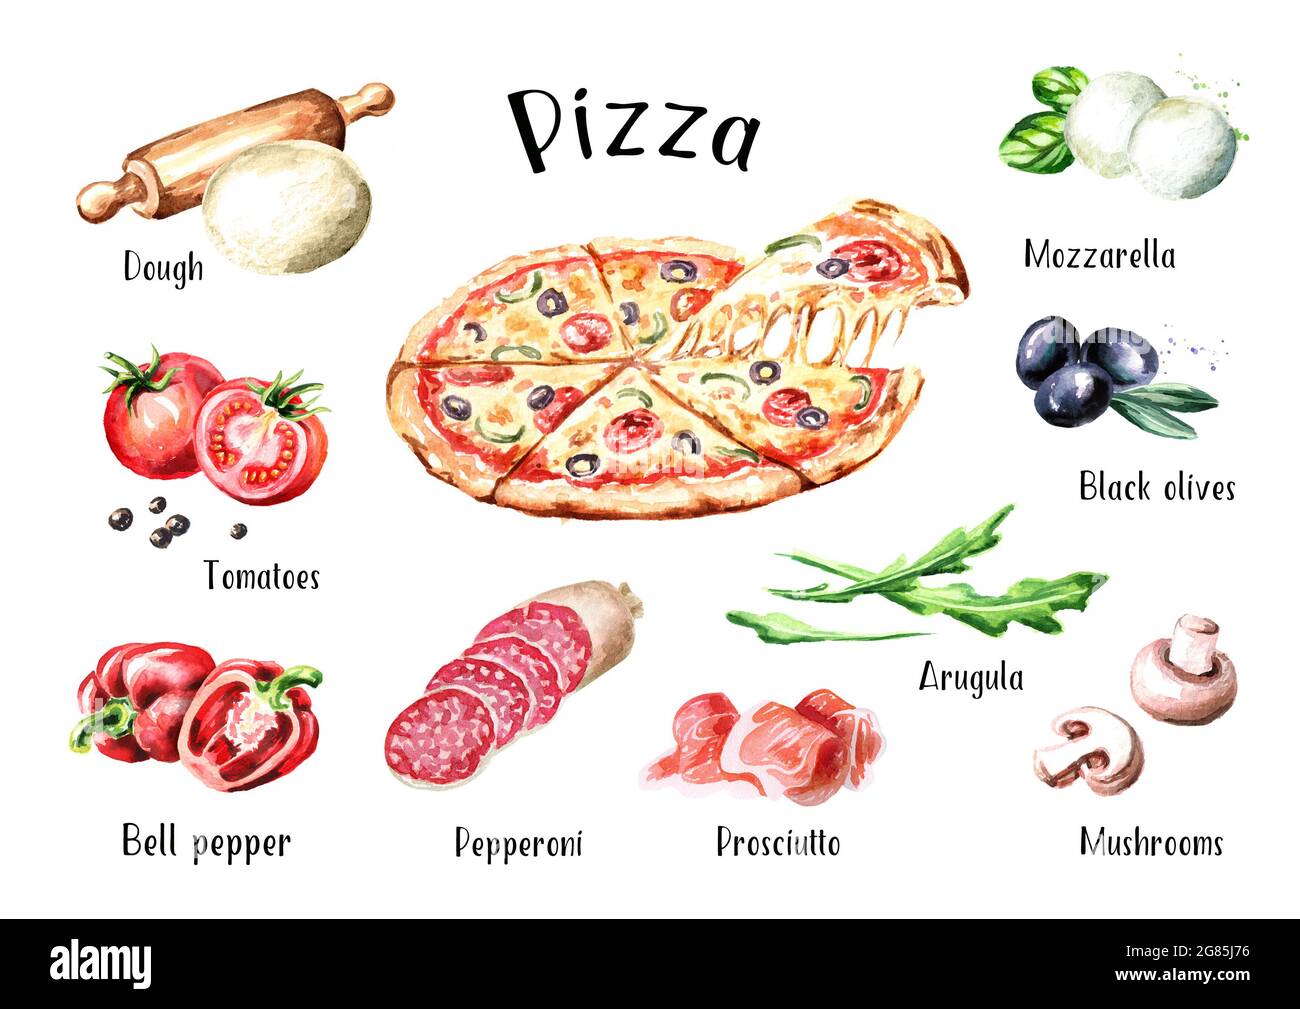 рецепт на английском языке пицца с переводом фото 24